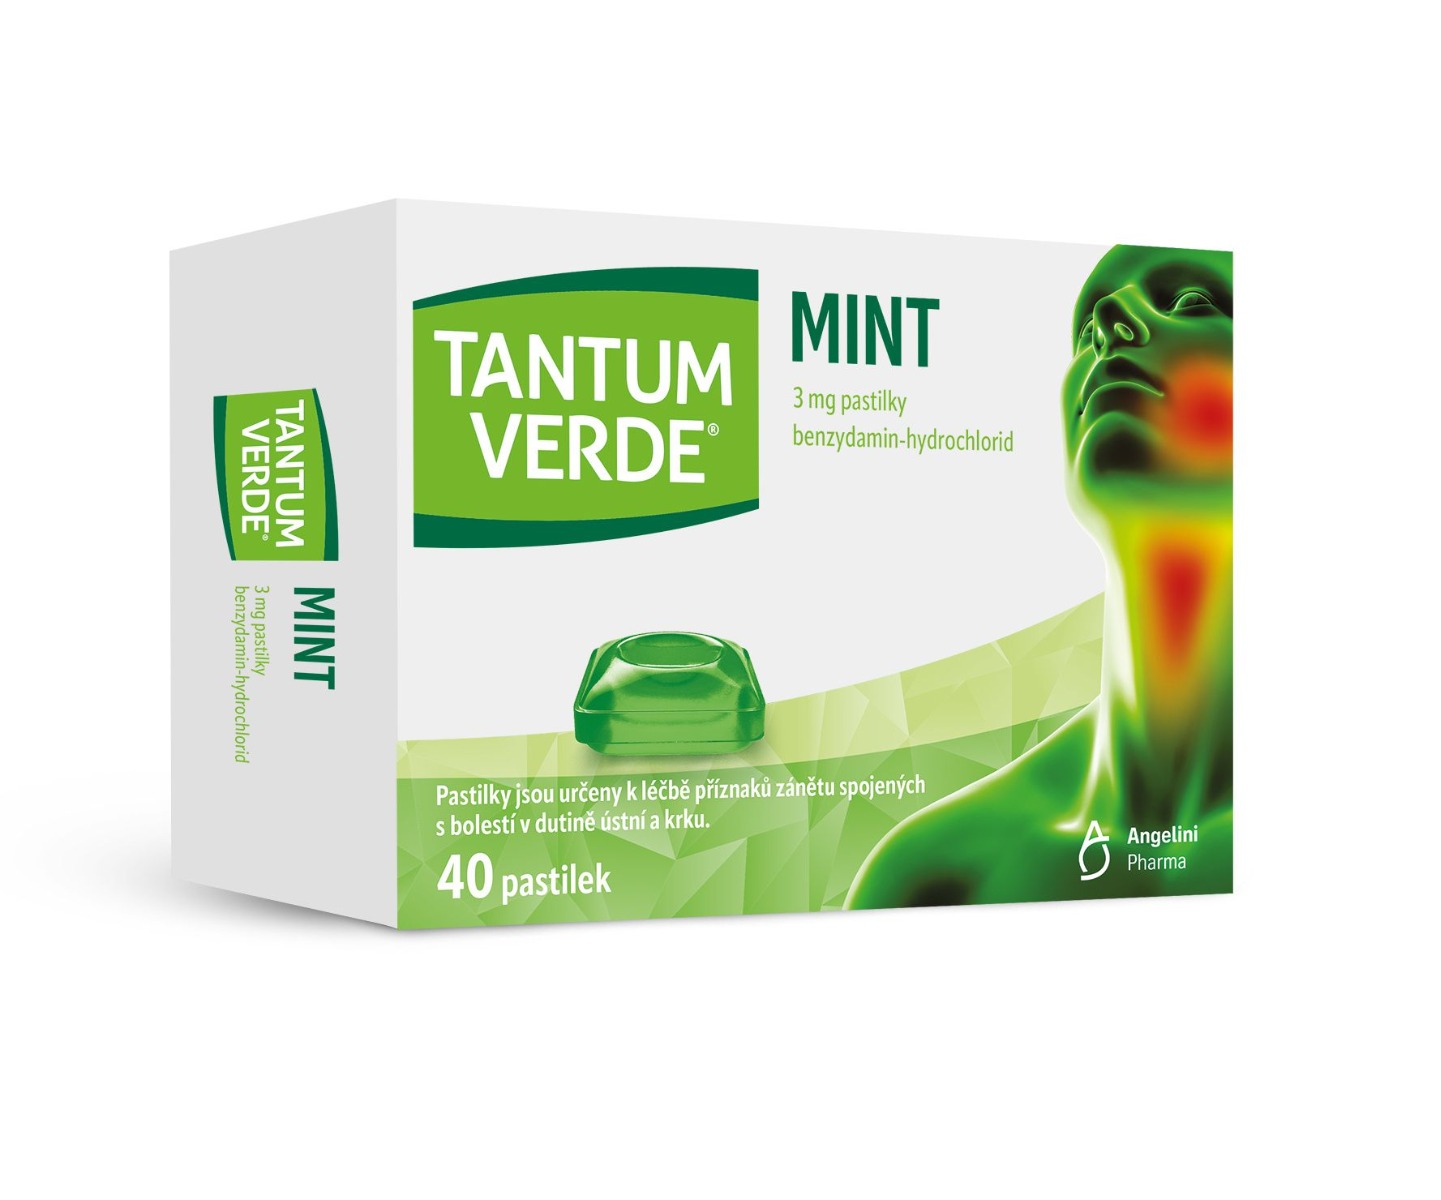 Tantum verde Mint 3 mg 40 pastilek Tantum verde